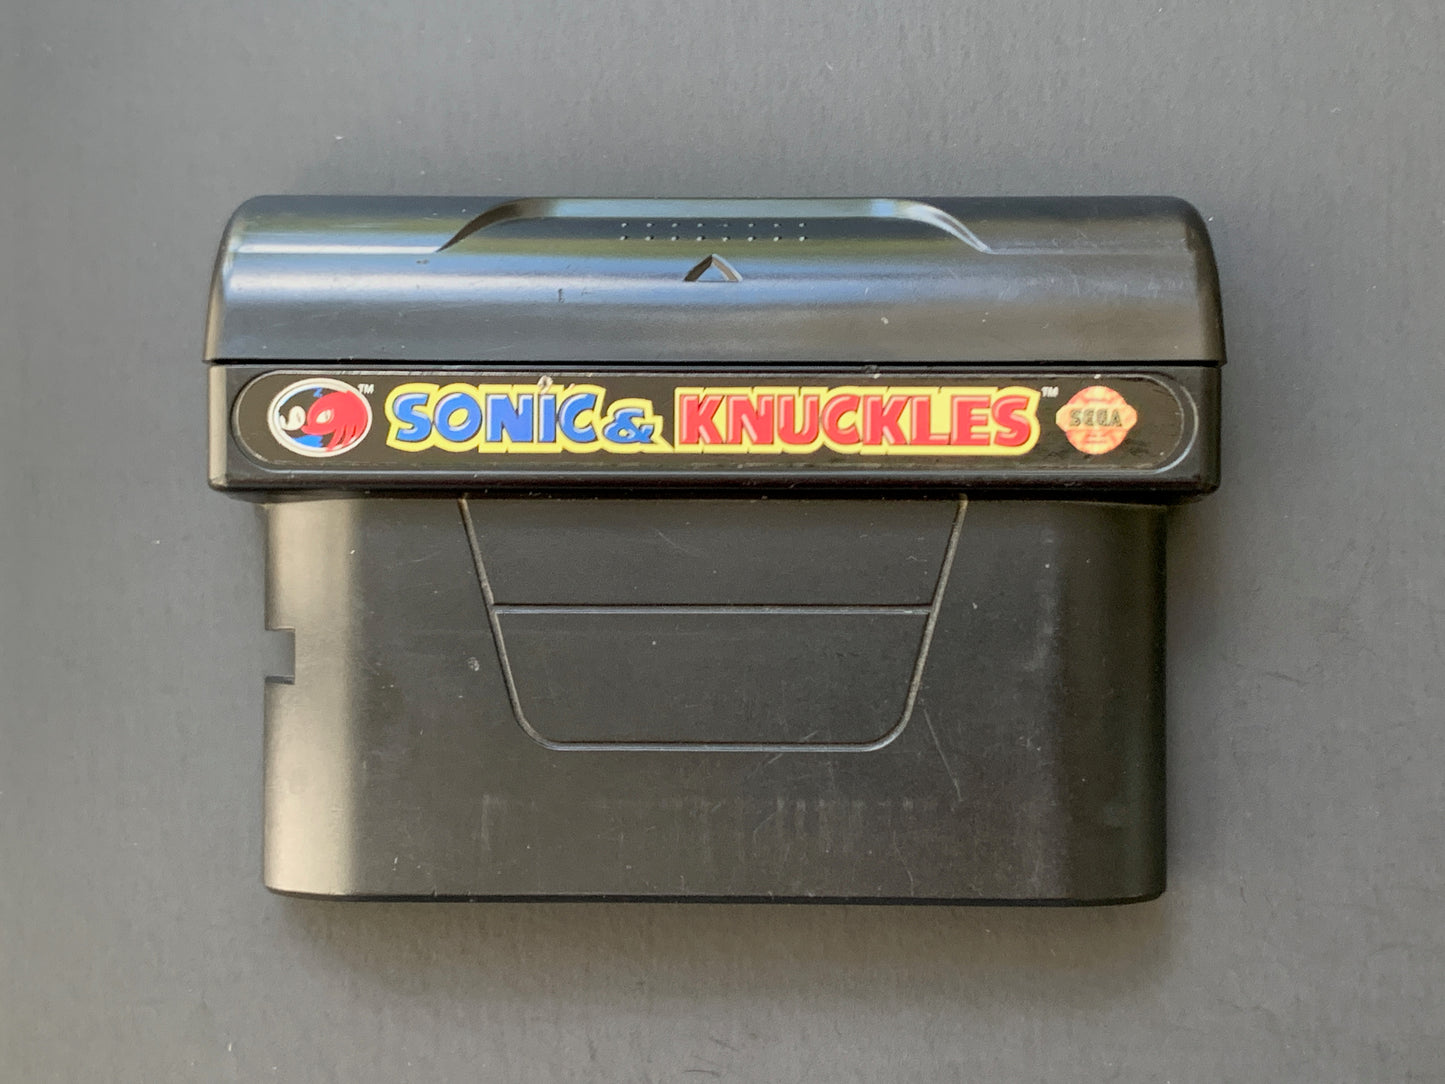 Sonic & Knuckles • Sega Genesis